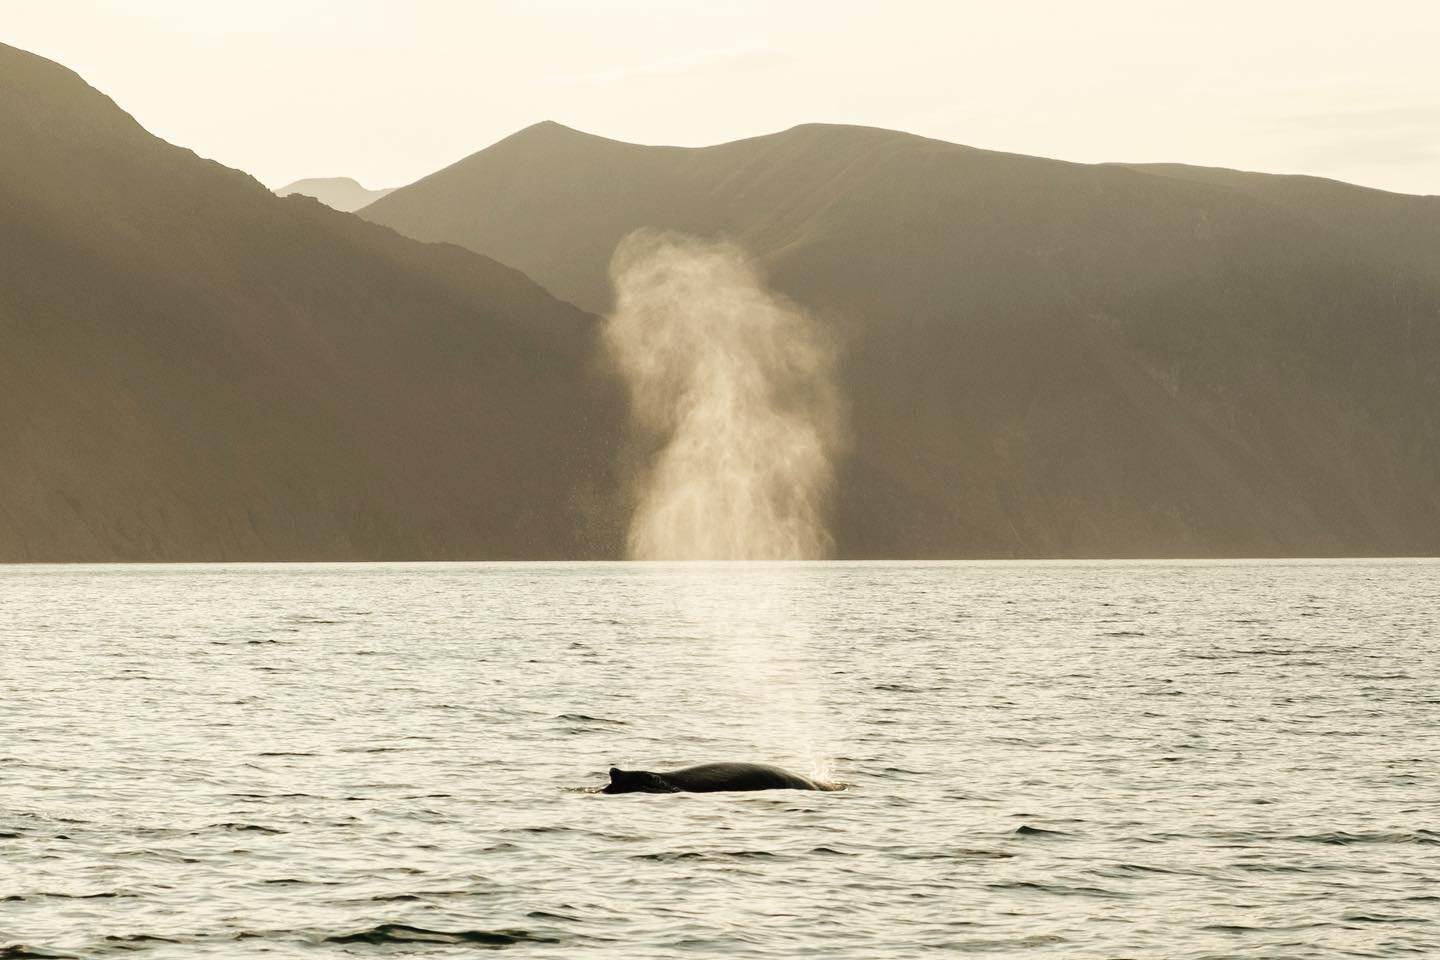 Een mooie herinnering aan een prachtige avond op zee om walvissen te kijken.#whalewatching #whalewatchingiceland #whalewatchinghusavik #walvis #walvissenspotten #iceland #icelandroadtrip #fujifilm #fujixt4 #fujifilmxseries